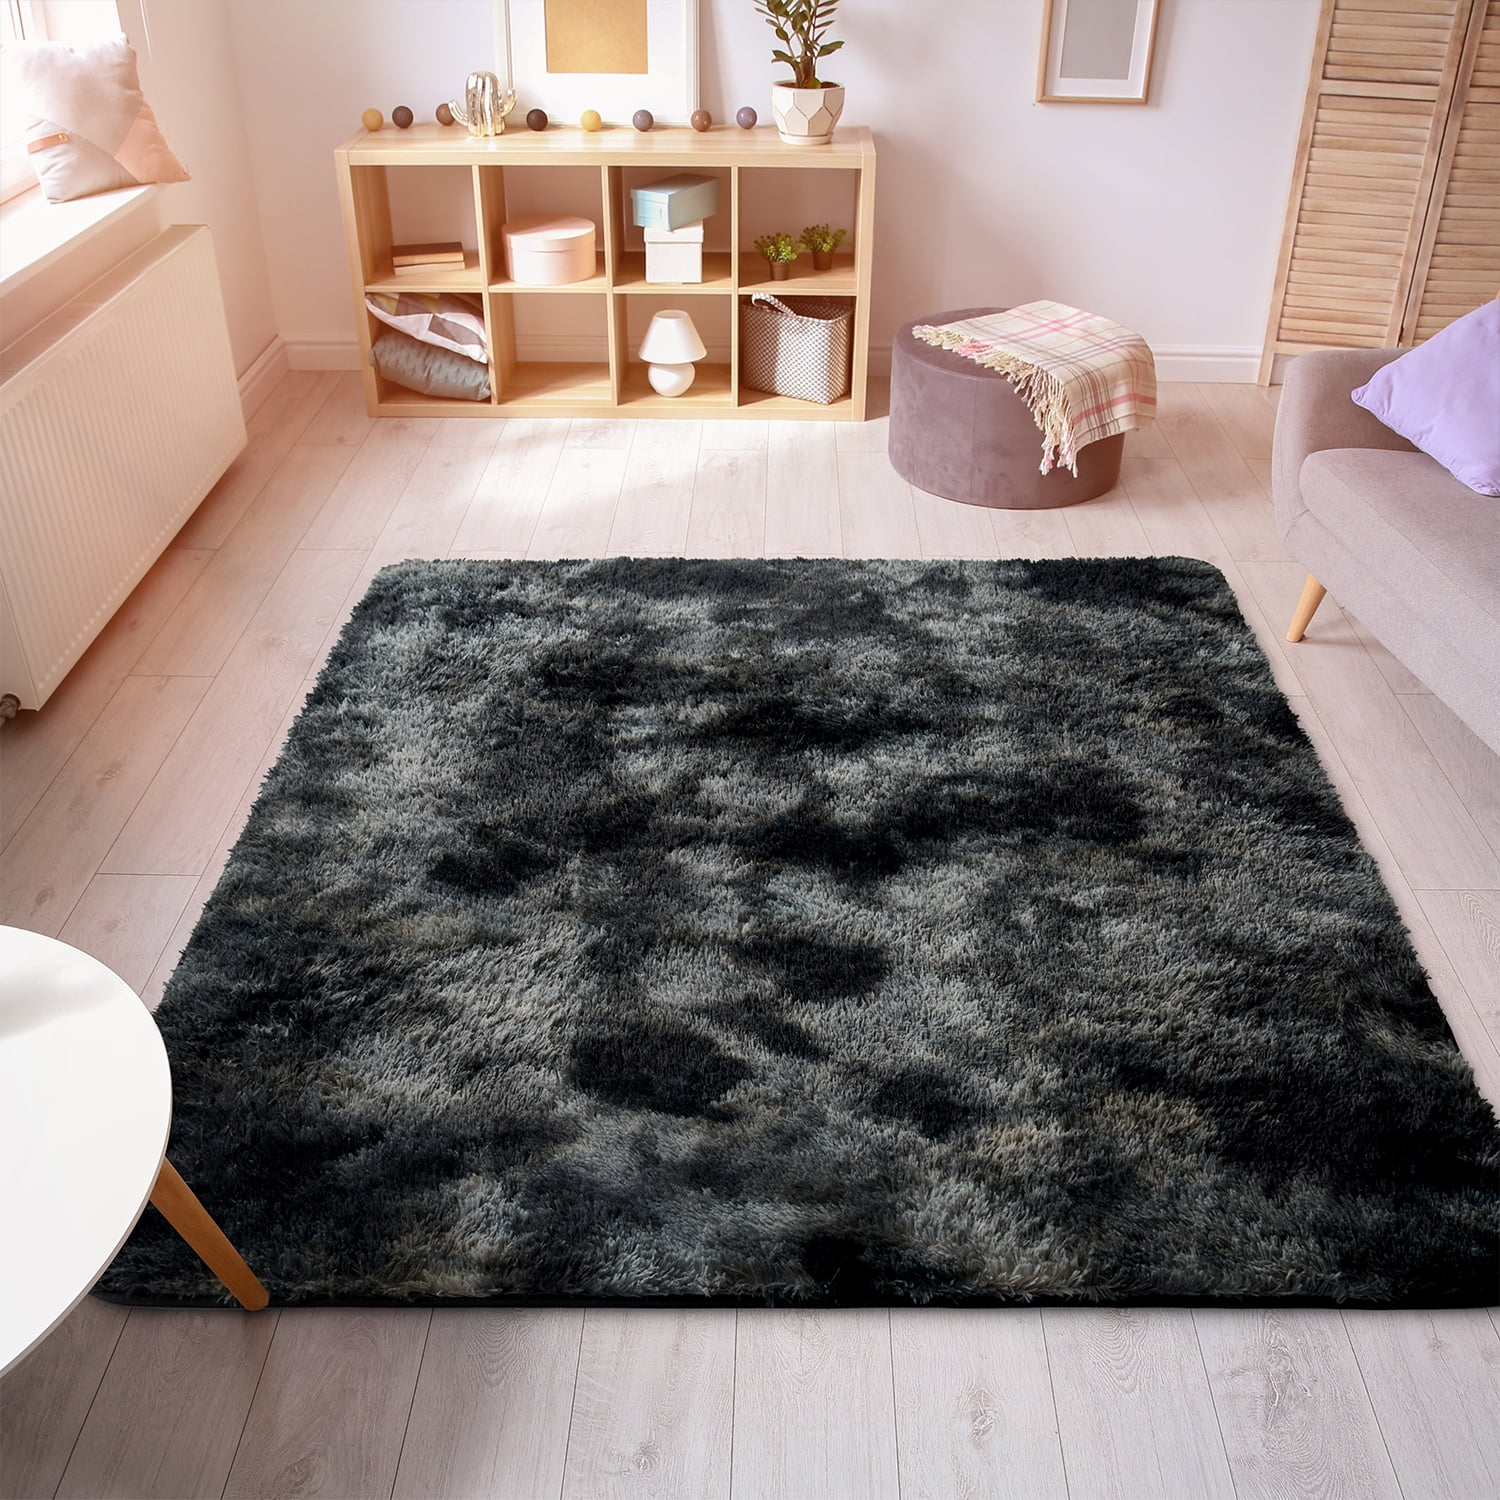 Soft Plush Faux Fur Area Rug 4x6 Feet, Black Faux Fur Living Room Rug